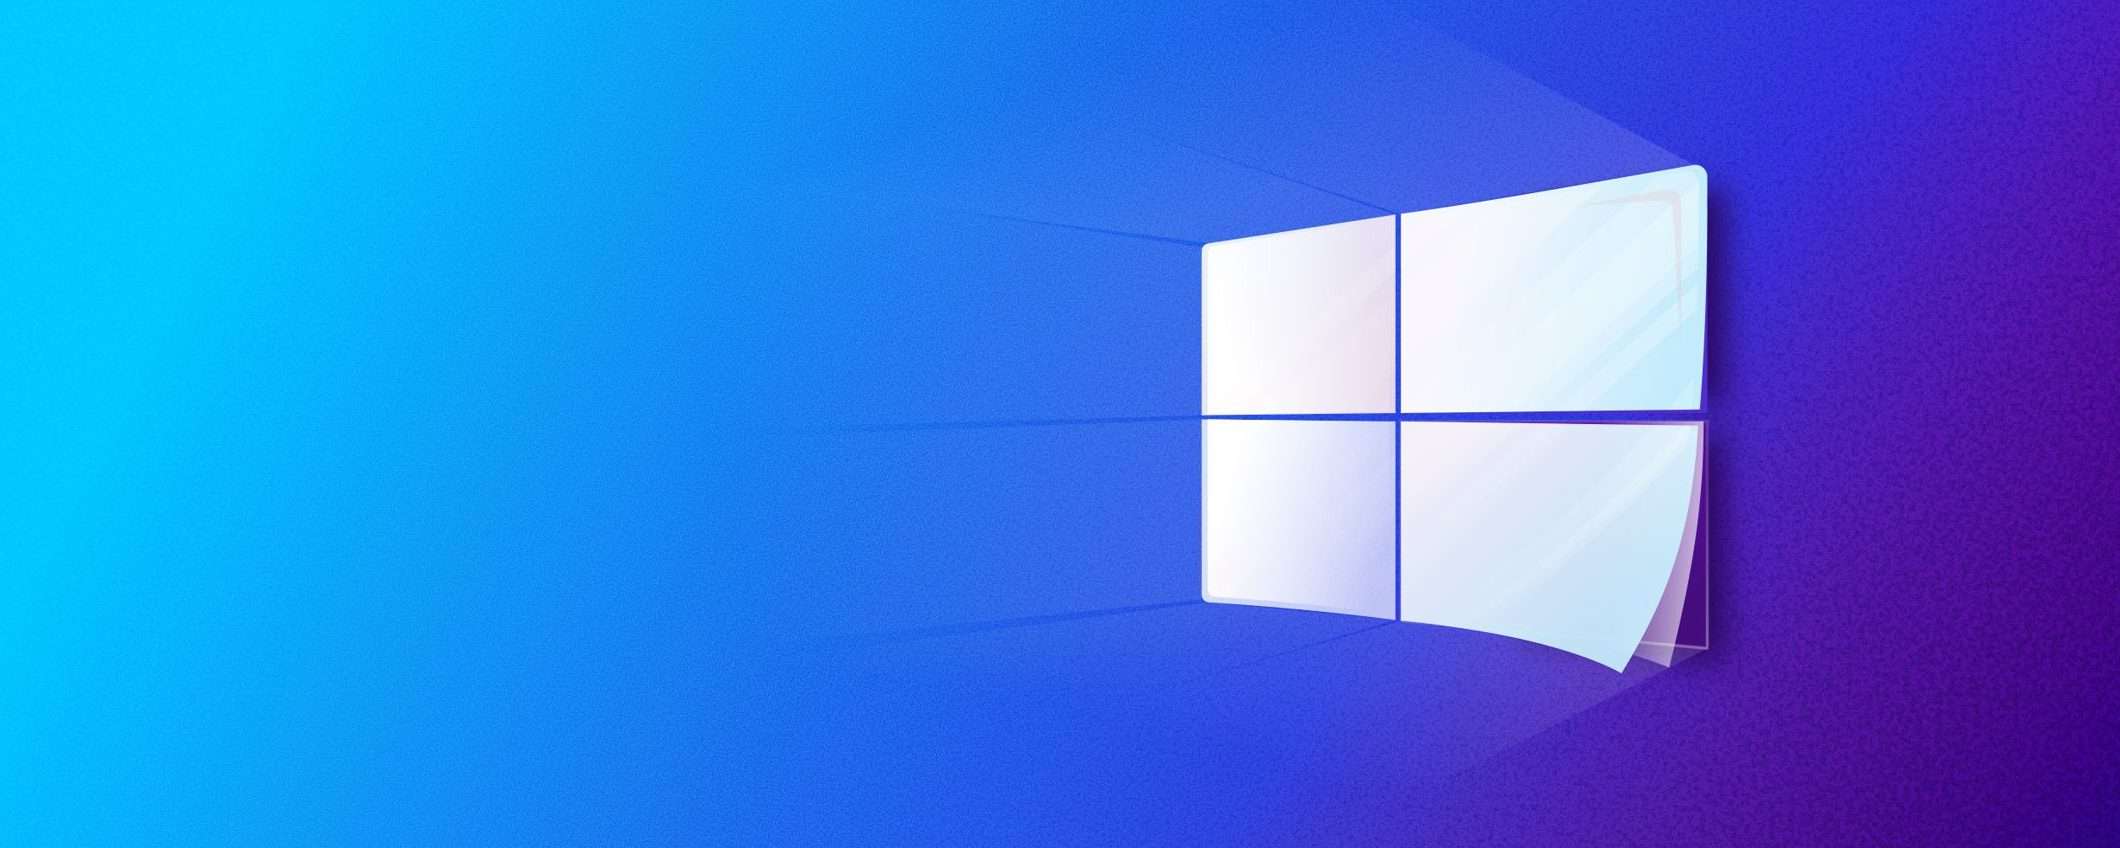 Windows 10 licenza lifetime solo 11€, Office 21€: -91% nel nuovo anno